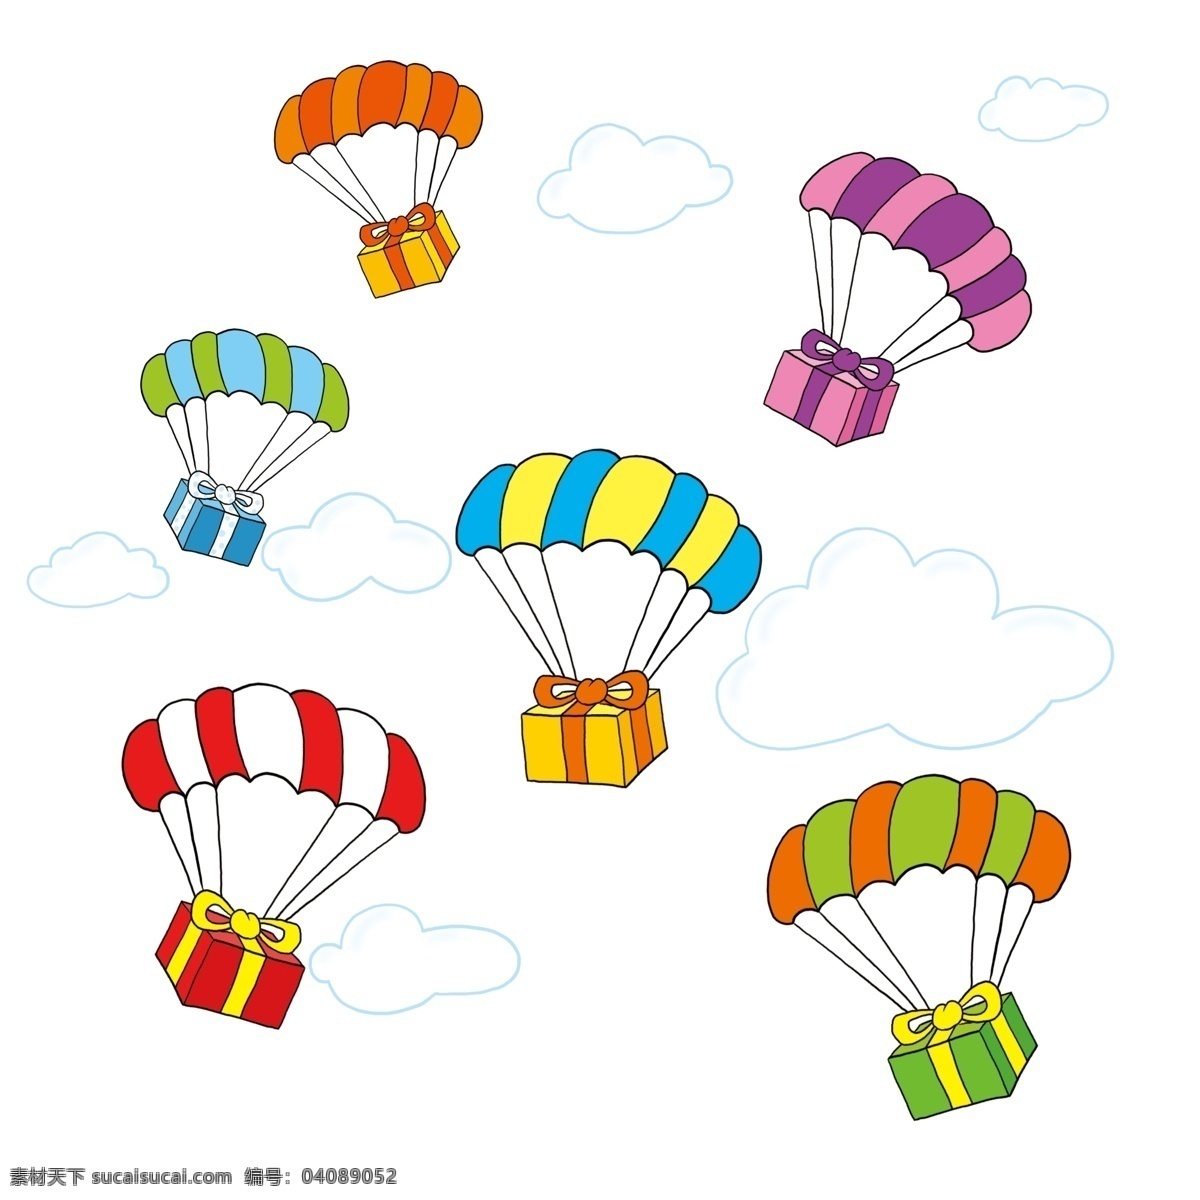 漂浮 下落 降落伞 礼物 云 天空 卡通 可爱 手绘